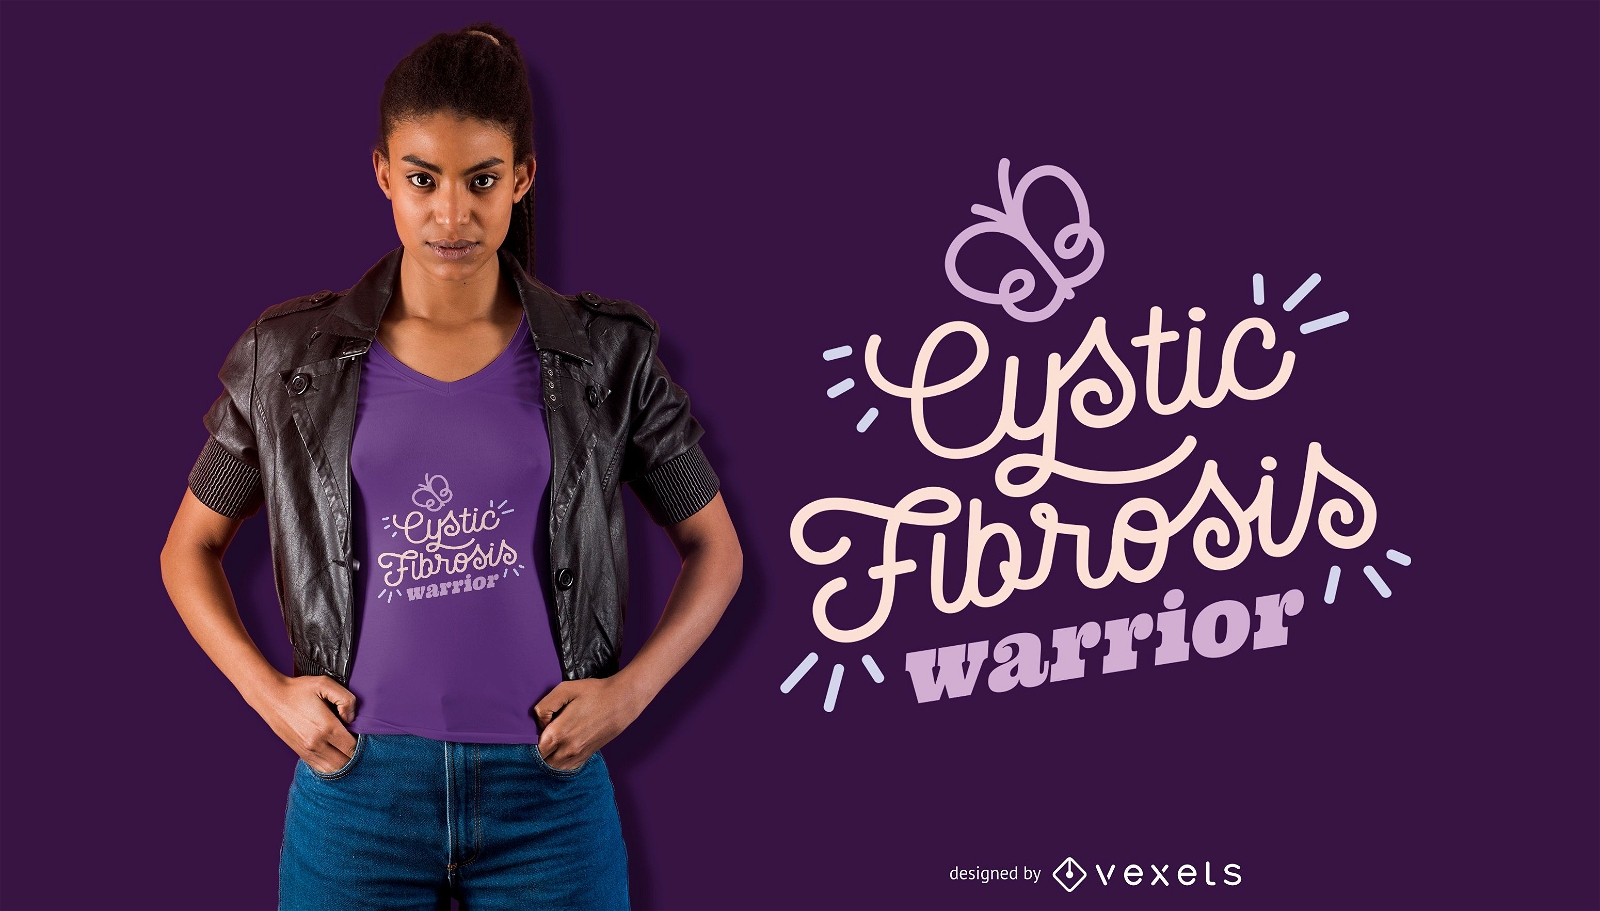 Cystic Fibrosis Warrior T-shirt Design 